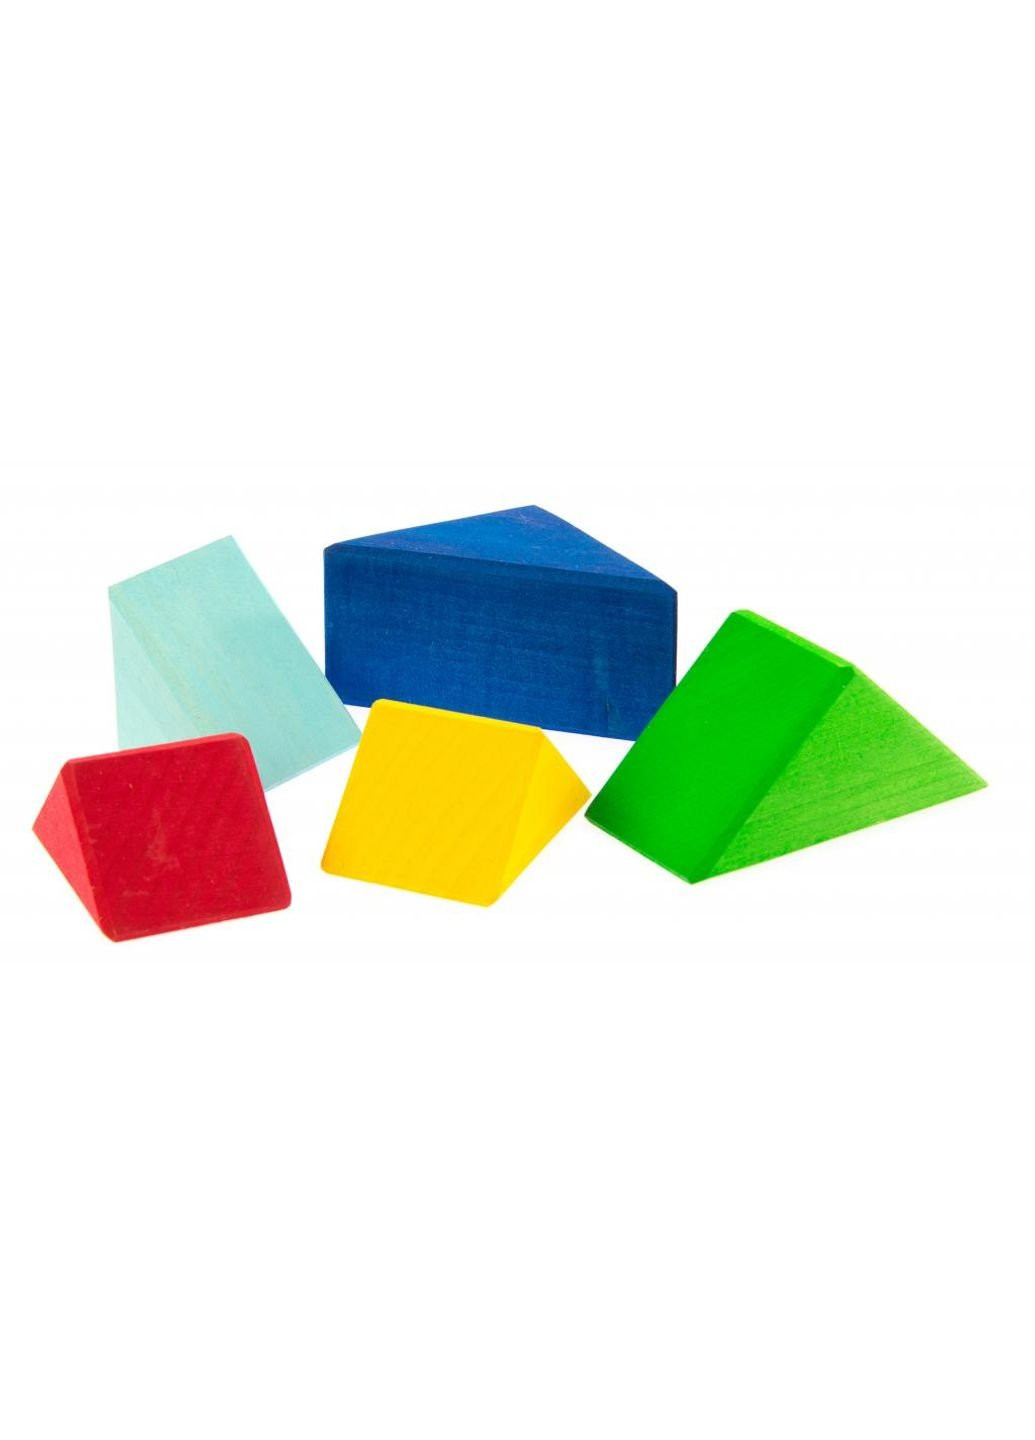 Конструктор дерев'яний Різнобарвний трикутник (523345) NIC деревянный разноцветный треугольник (249598894)